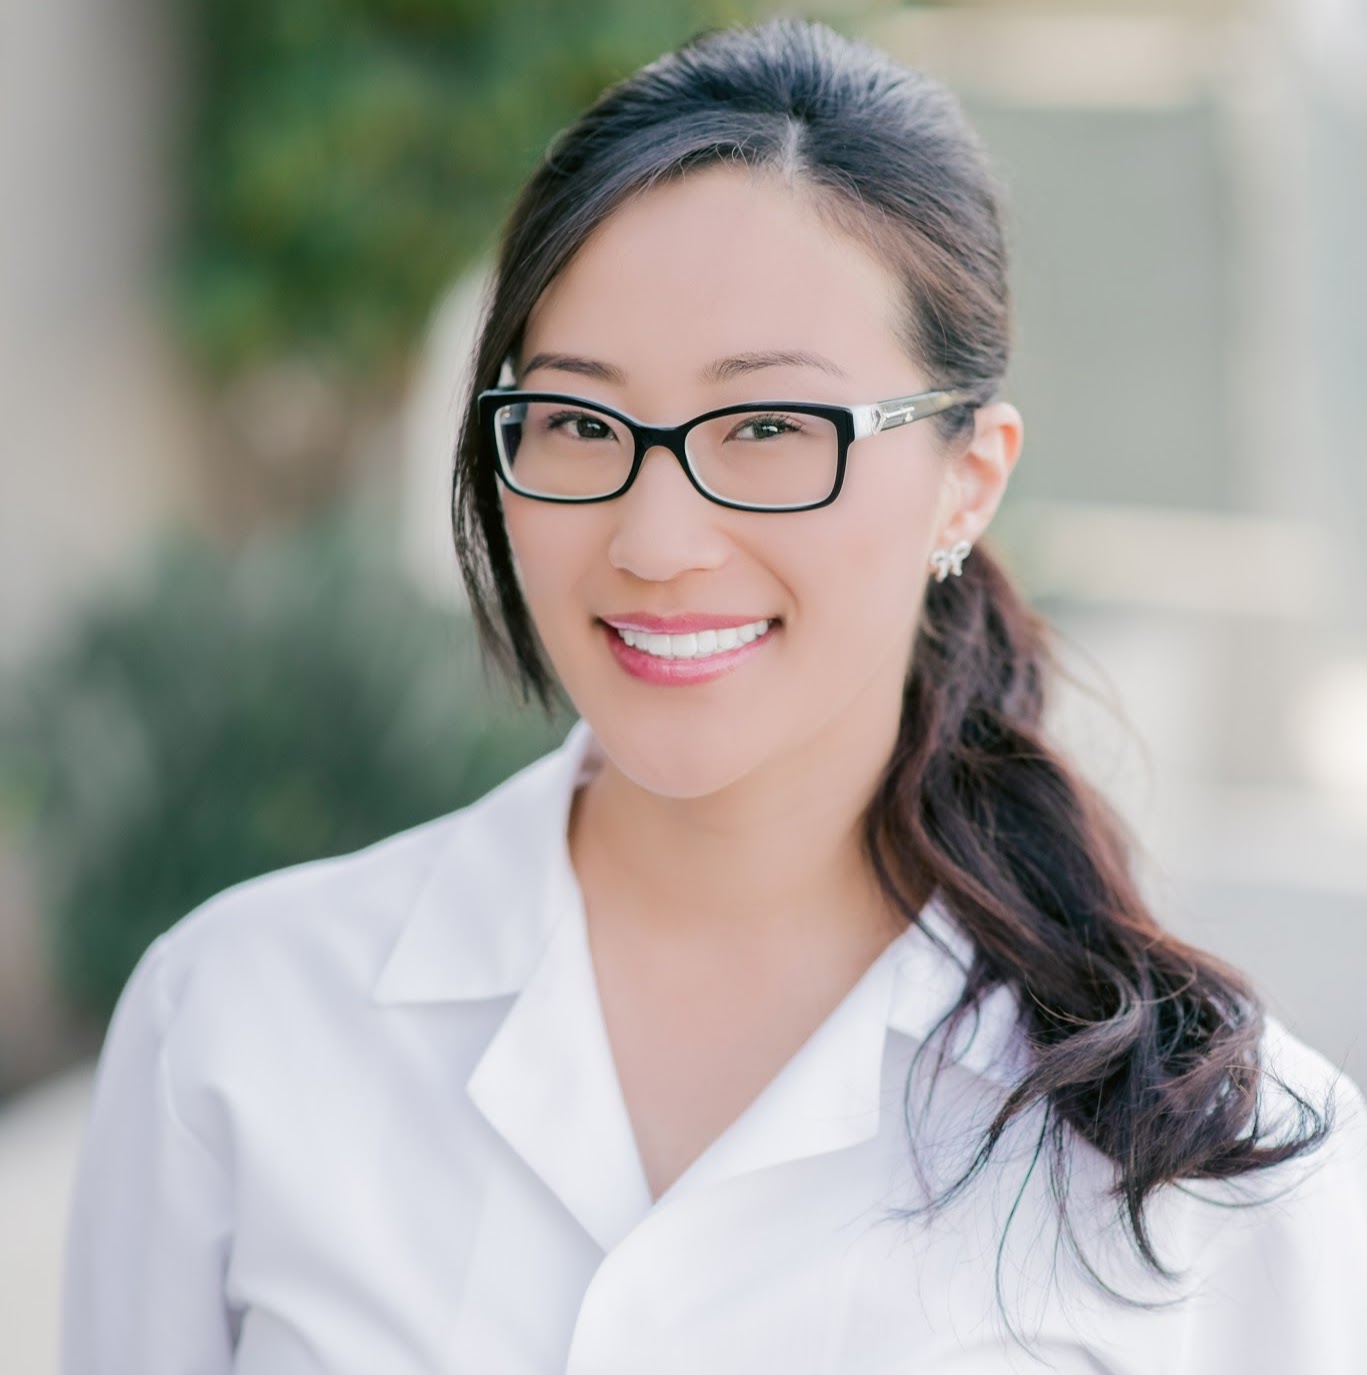 Ahn Dental Specialists: Michelle Ahn, DDS, MSD | 1444 Aviation Blvd Ste 201, Redondo Beach, CA, 90278 | +1 (310) 376-2460